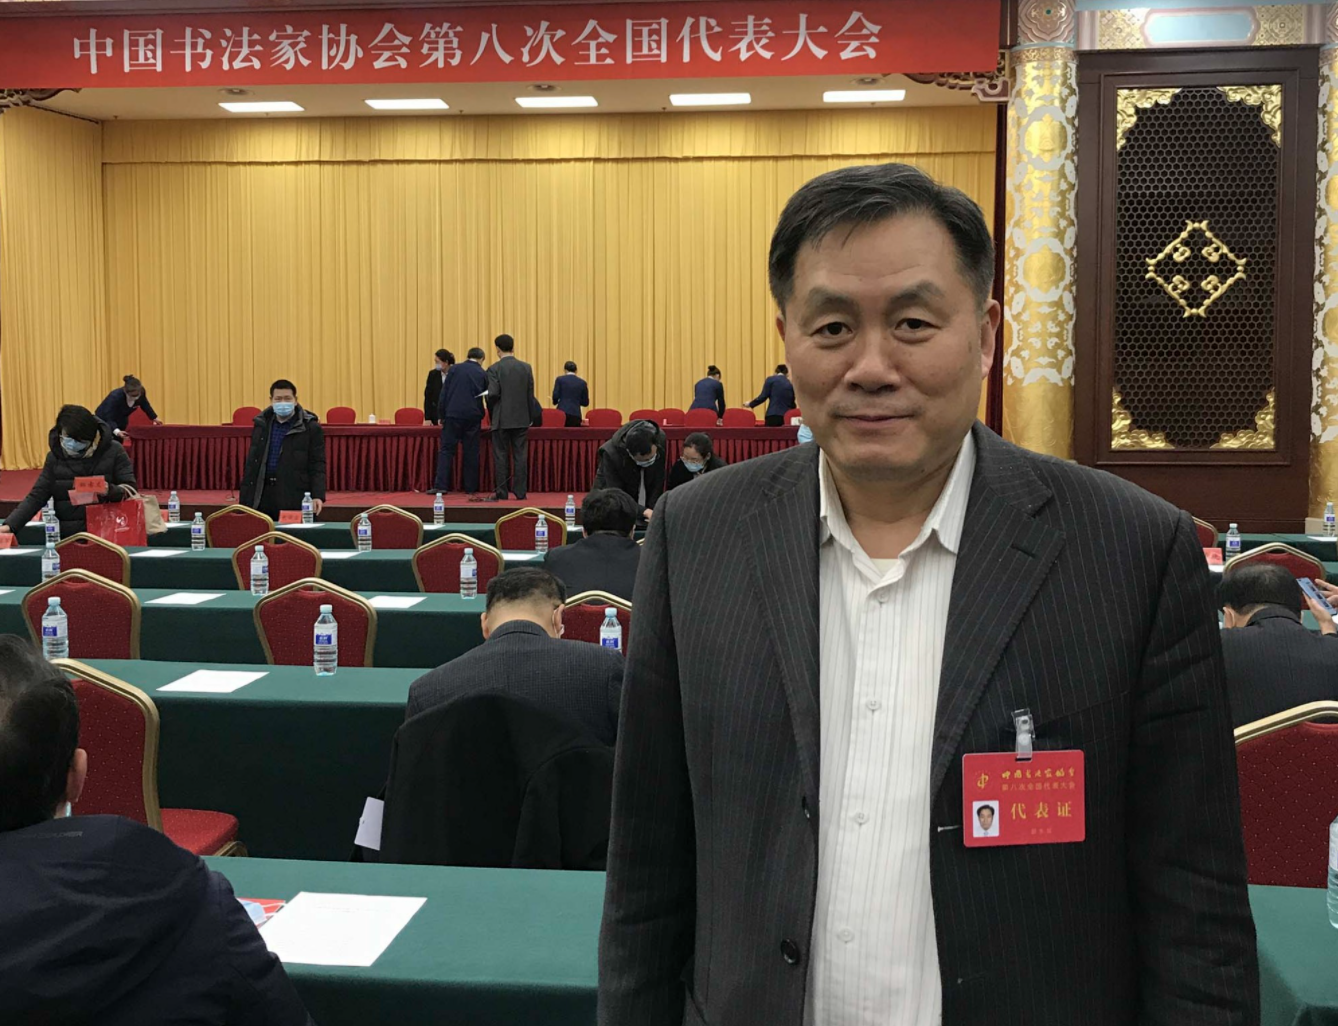 郭永琰当选为中国书协第八届理事